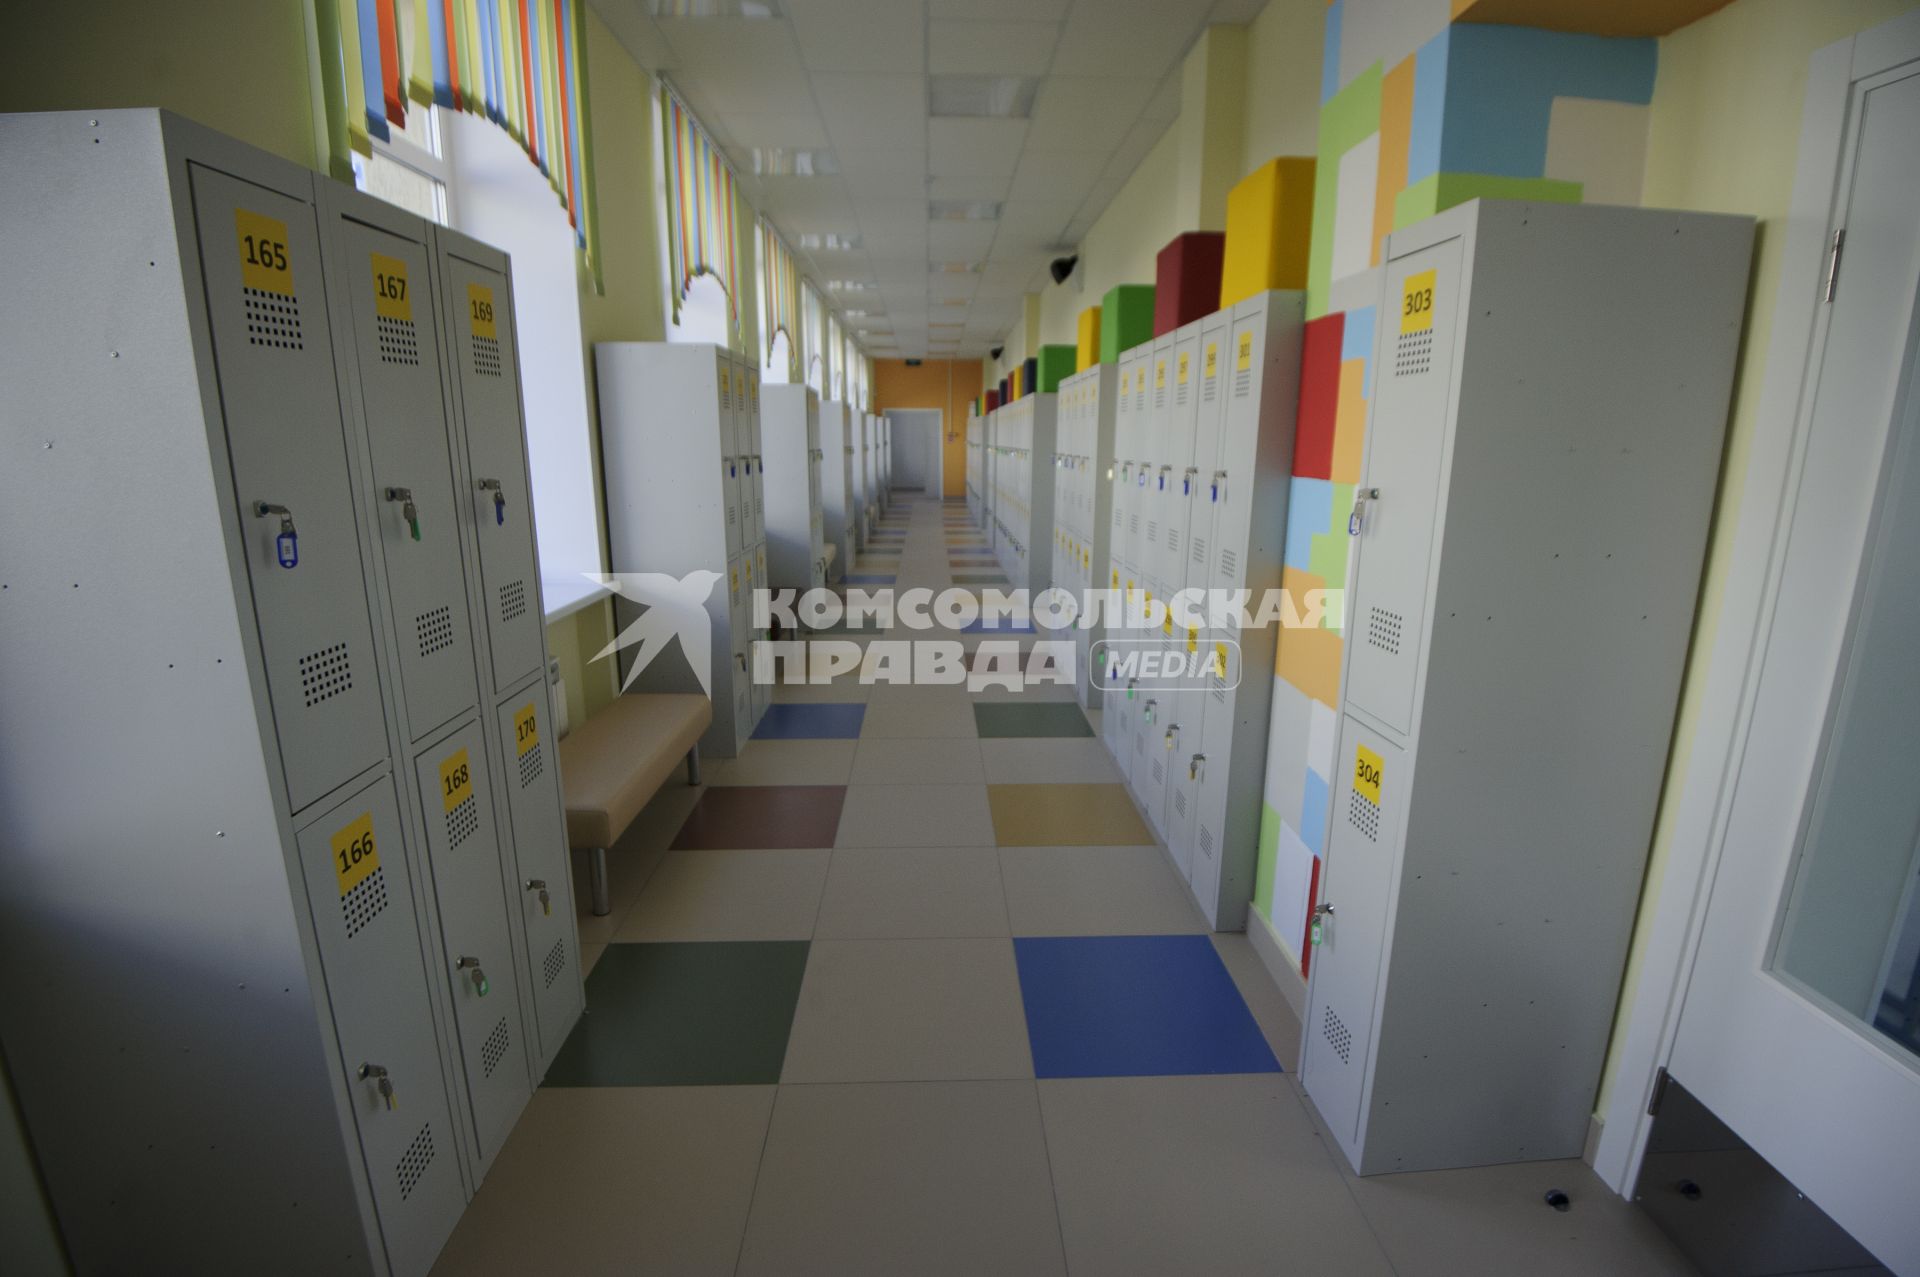 Екатеринбург. Коридор среднеобразовательной школы открытой после реконструкции